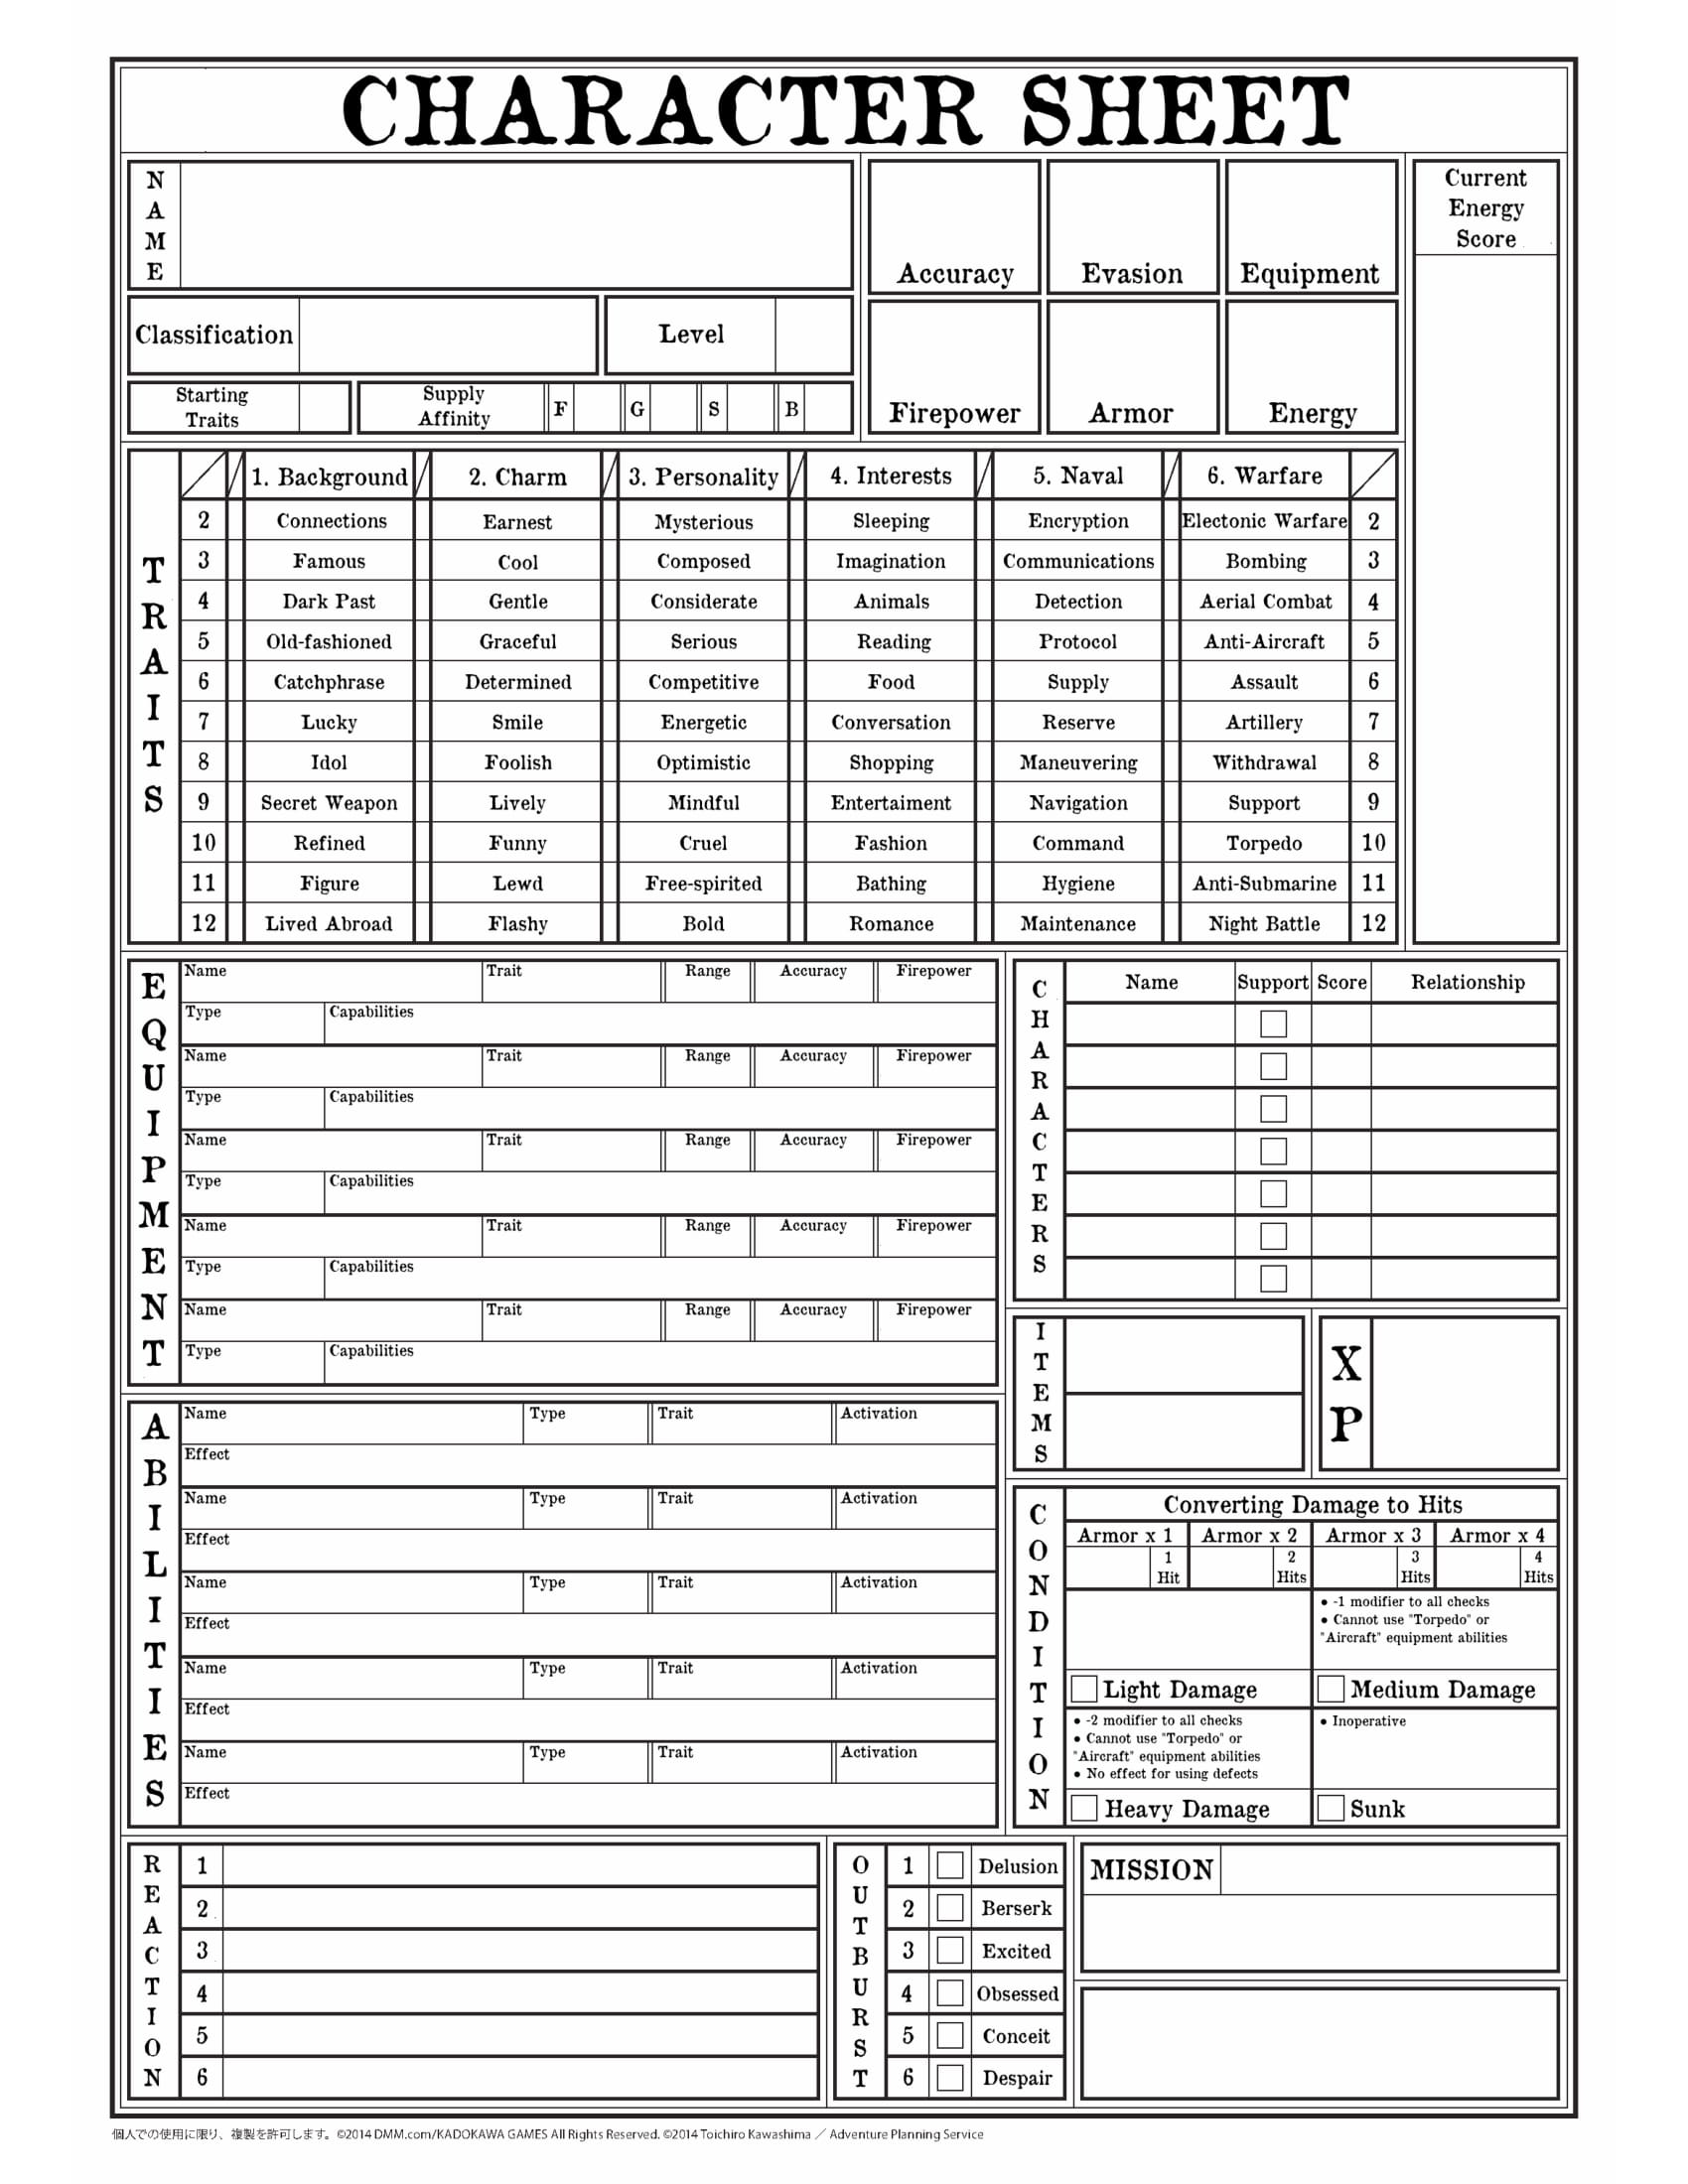 pcgen character sheet templates